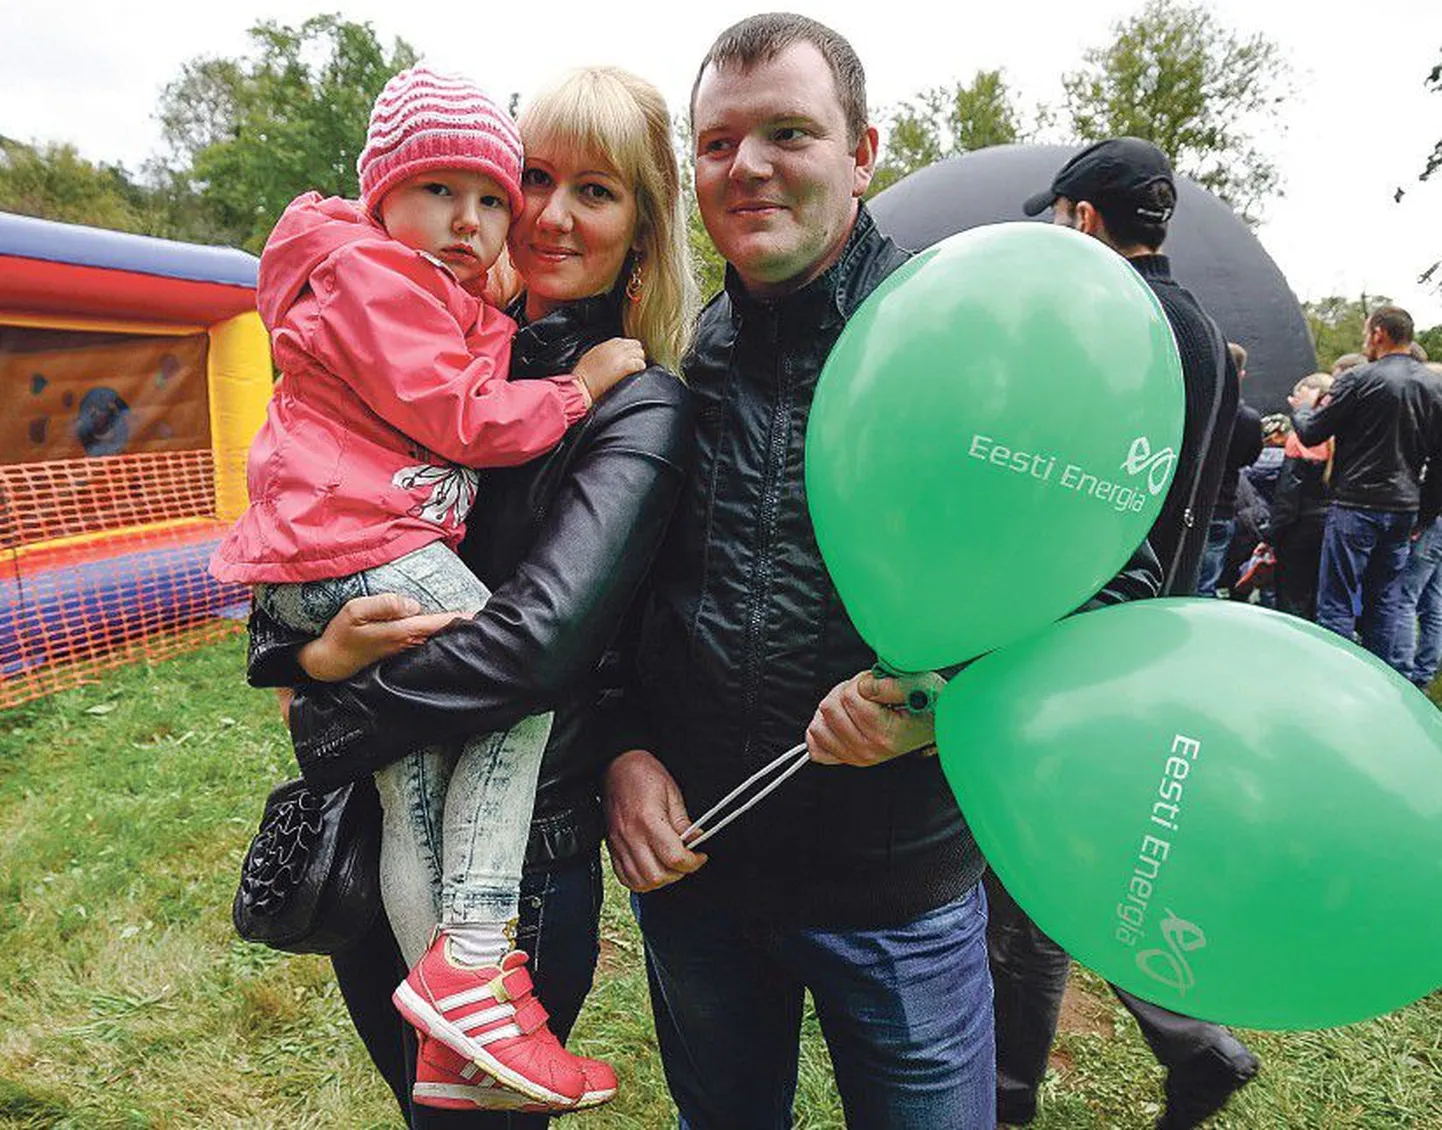 Шахтерская семья: Егор Ромашко (31) приехал в Тойлаский парк с женой Светланой и трехлетней дочкой Дашей.